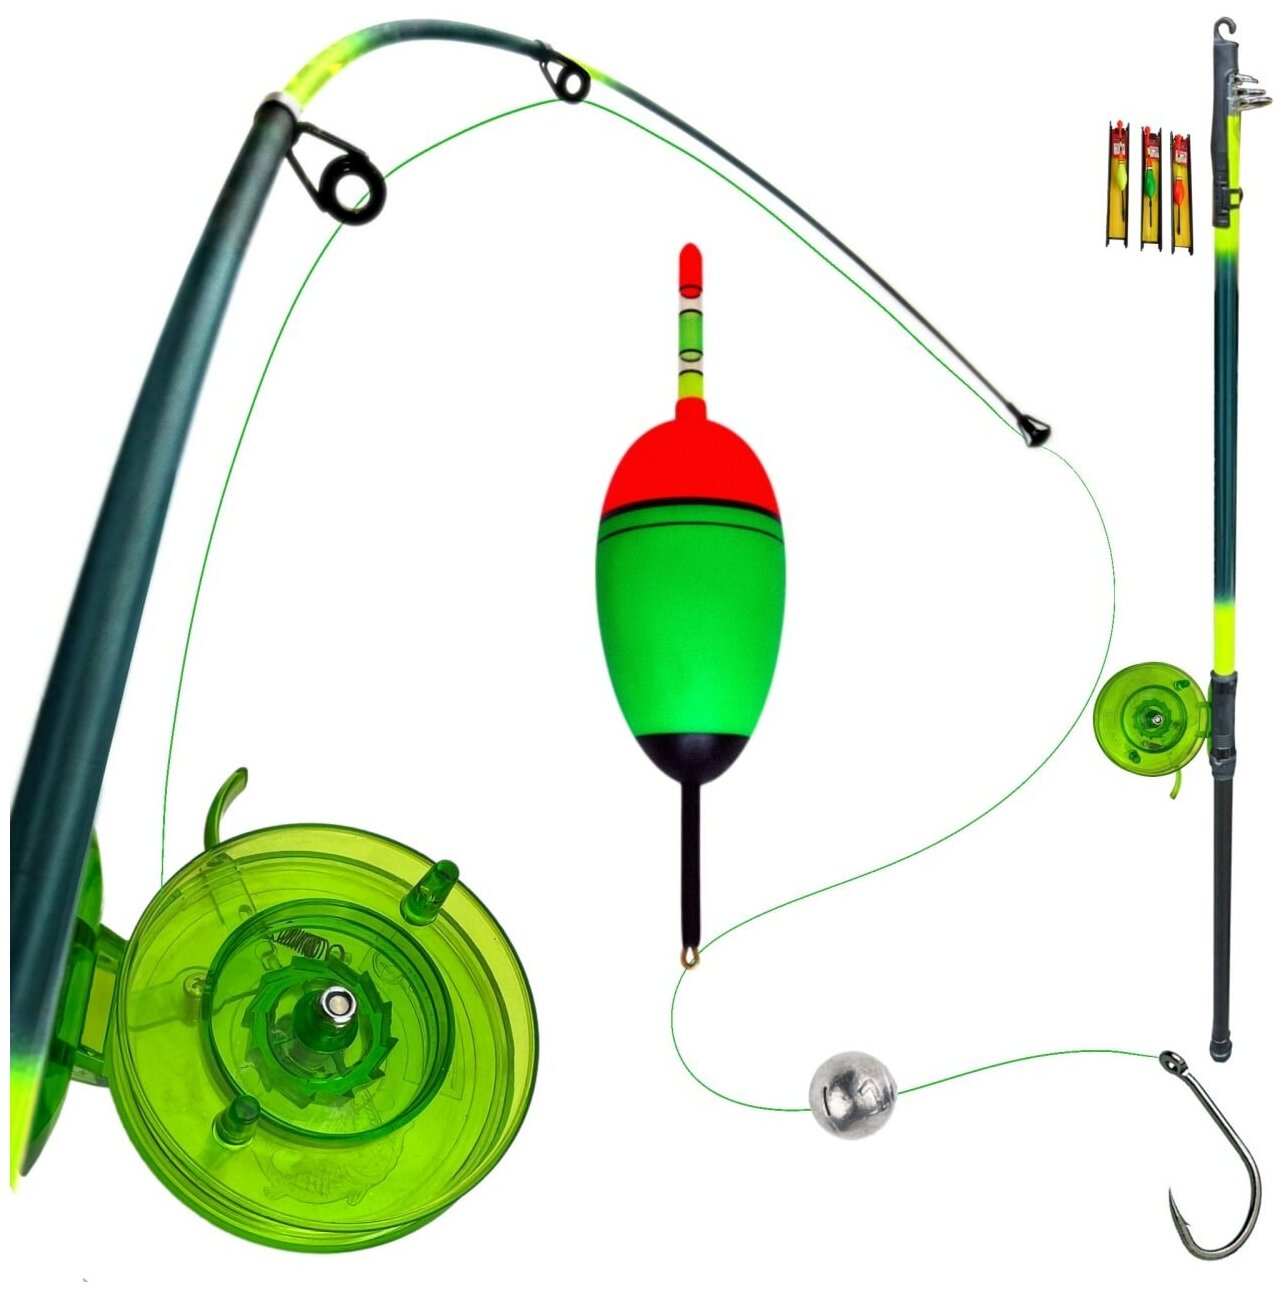 Удочка для ловли на поплавок с набором оснаски телескопическая зеленая 3 м. Набор удочка и оснастка.